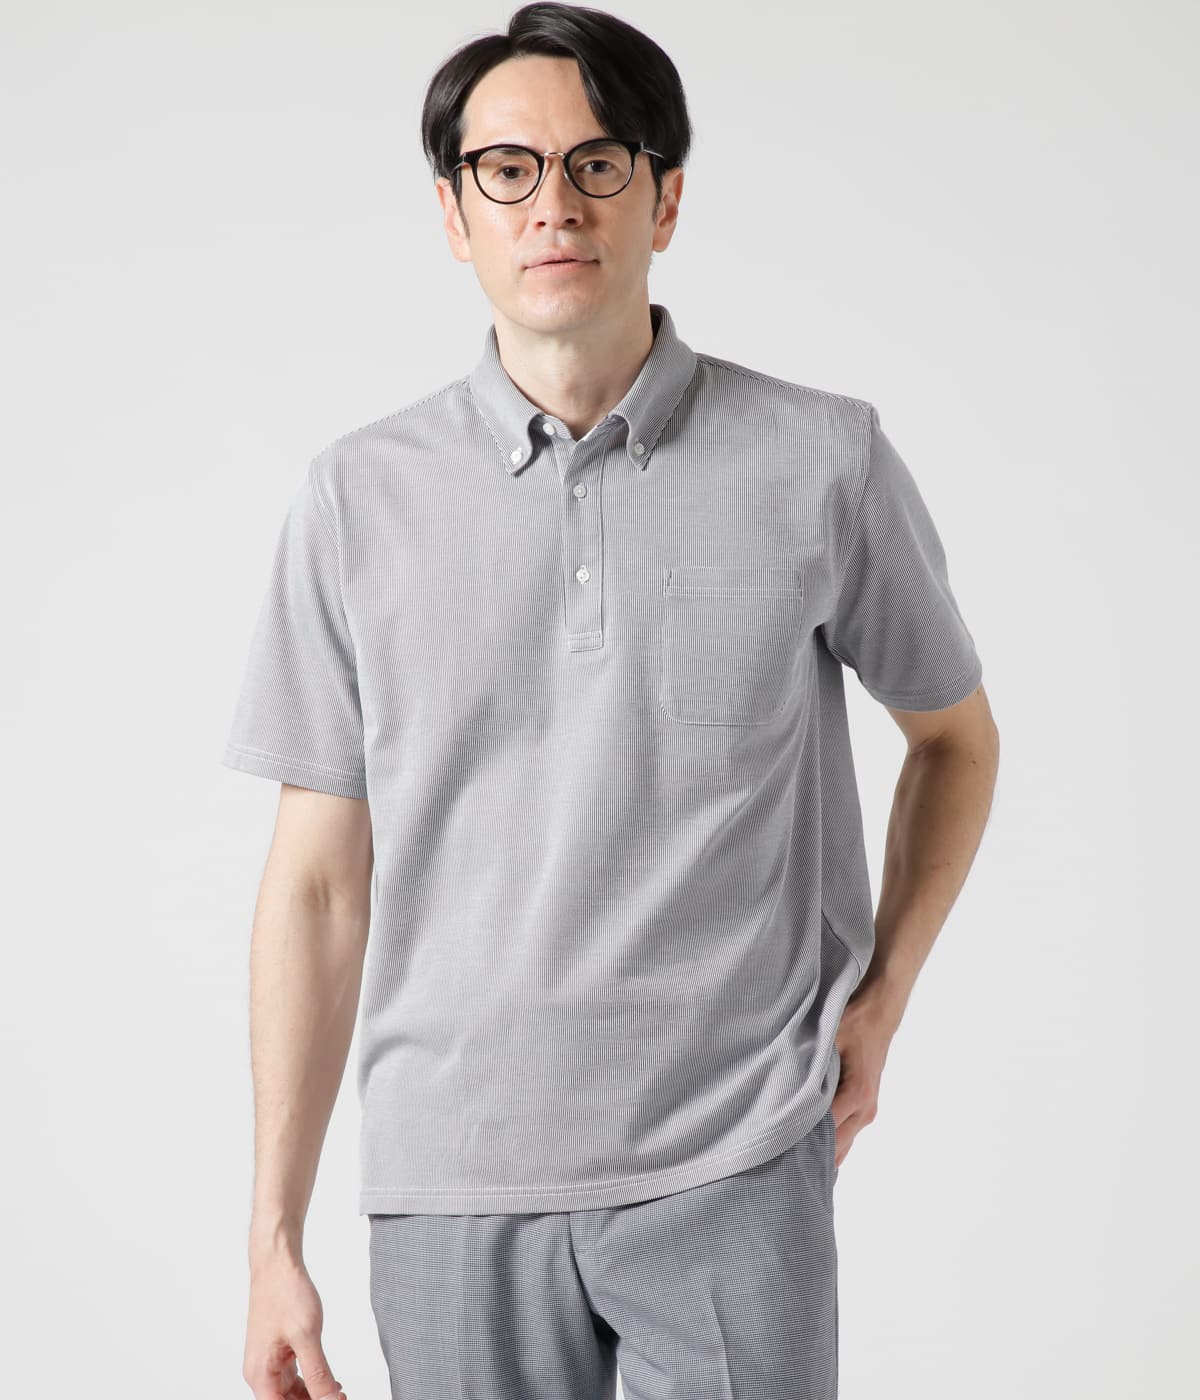 【吸水速乾】COOL COMFORT コードレーン ボタンダウンポロシャツ